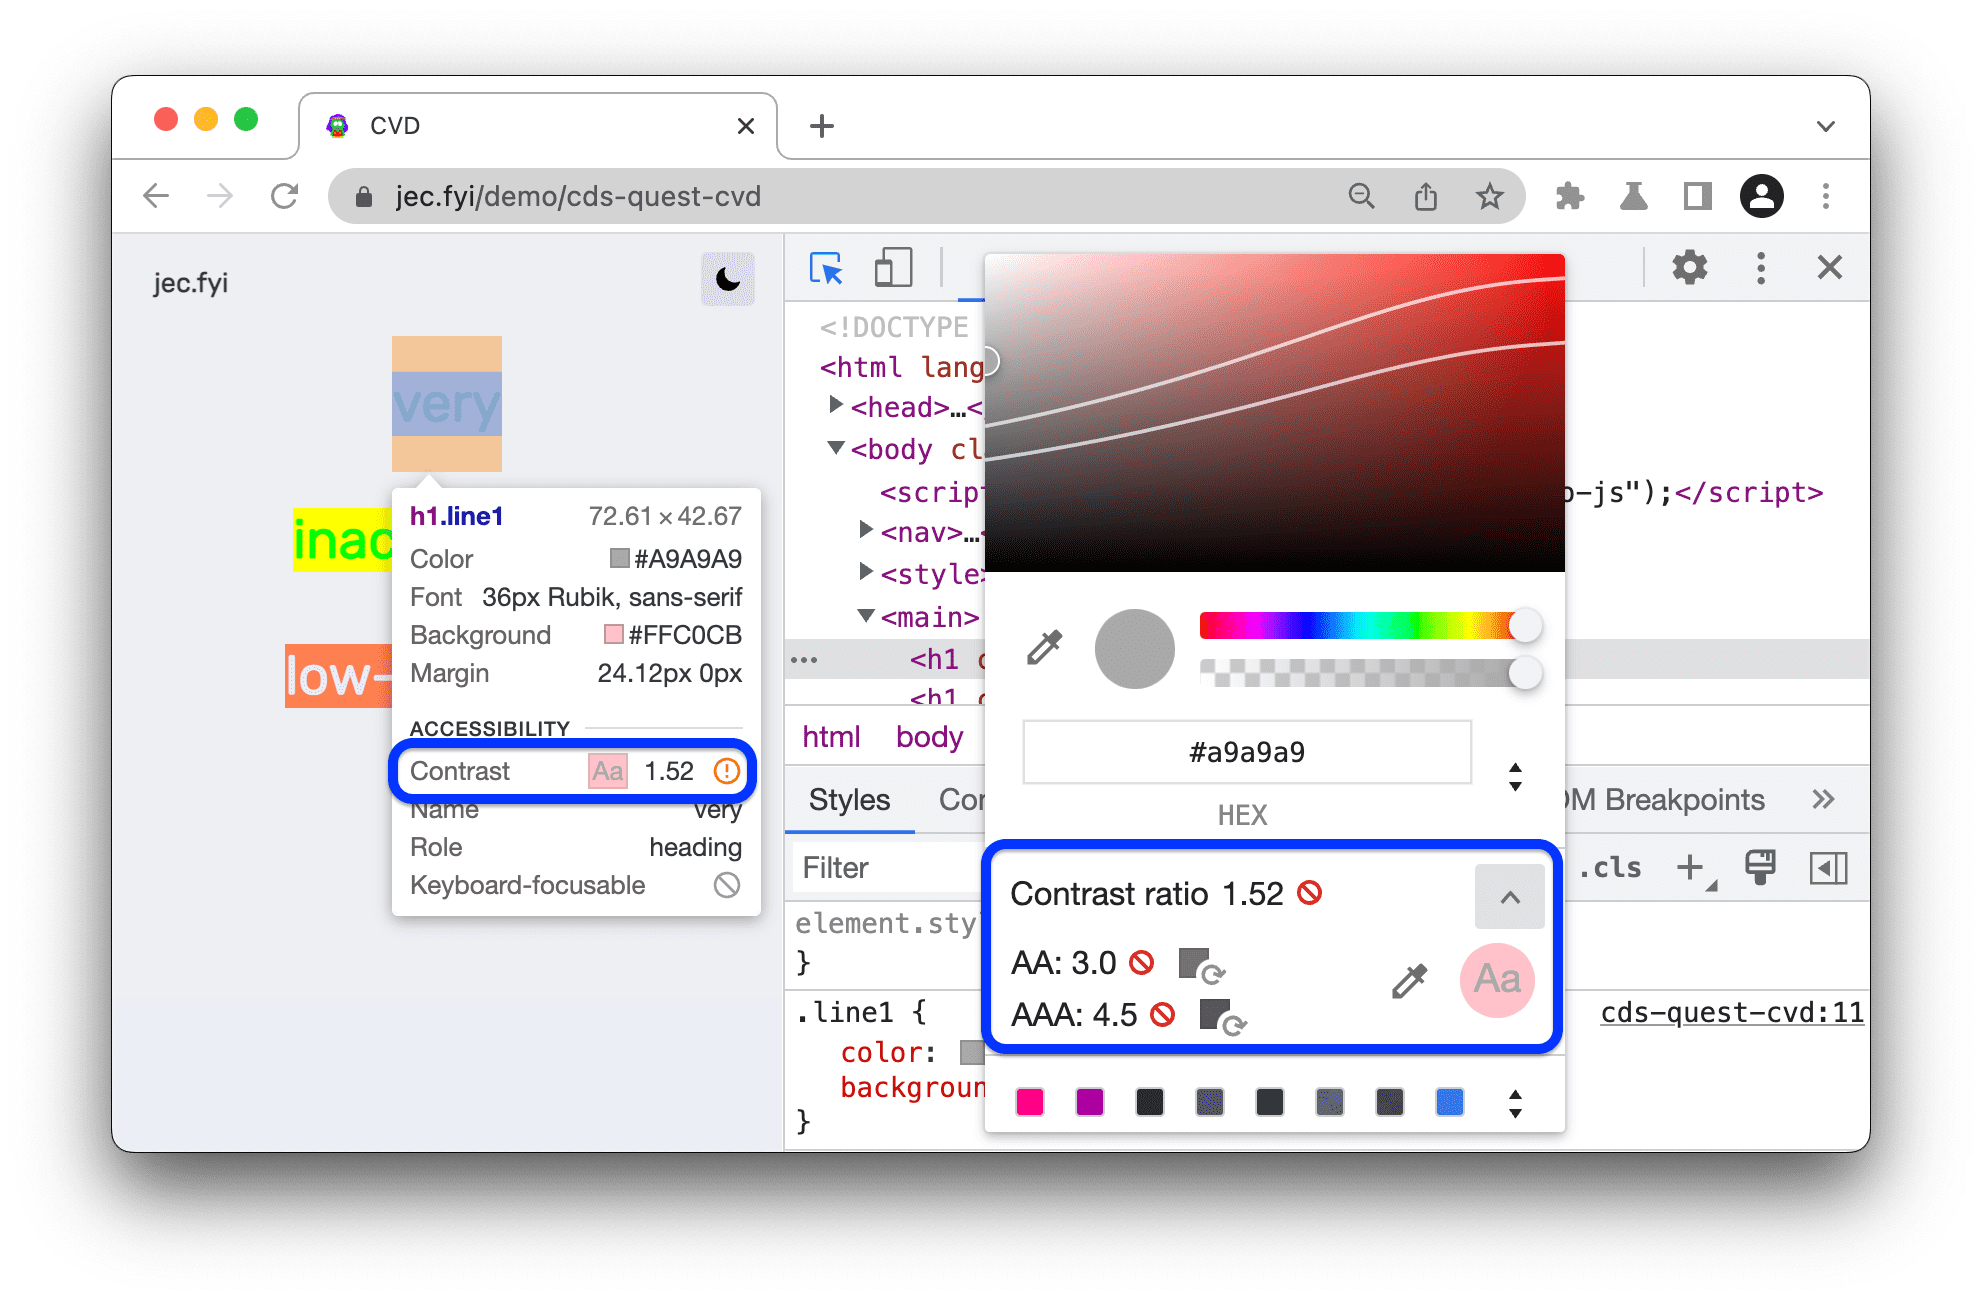 Contrastverhoudingen zijn beschikbaar in tooltip, met een Kleurkiezer om de verhouding van alternatieve kleuren te meten. Er is een AA- en AAA-indeling van het rantsoen beschikbaar.